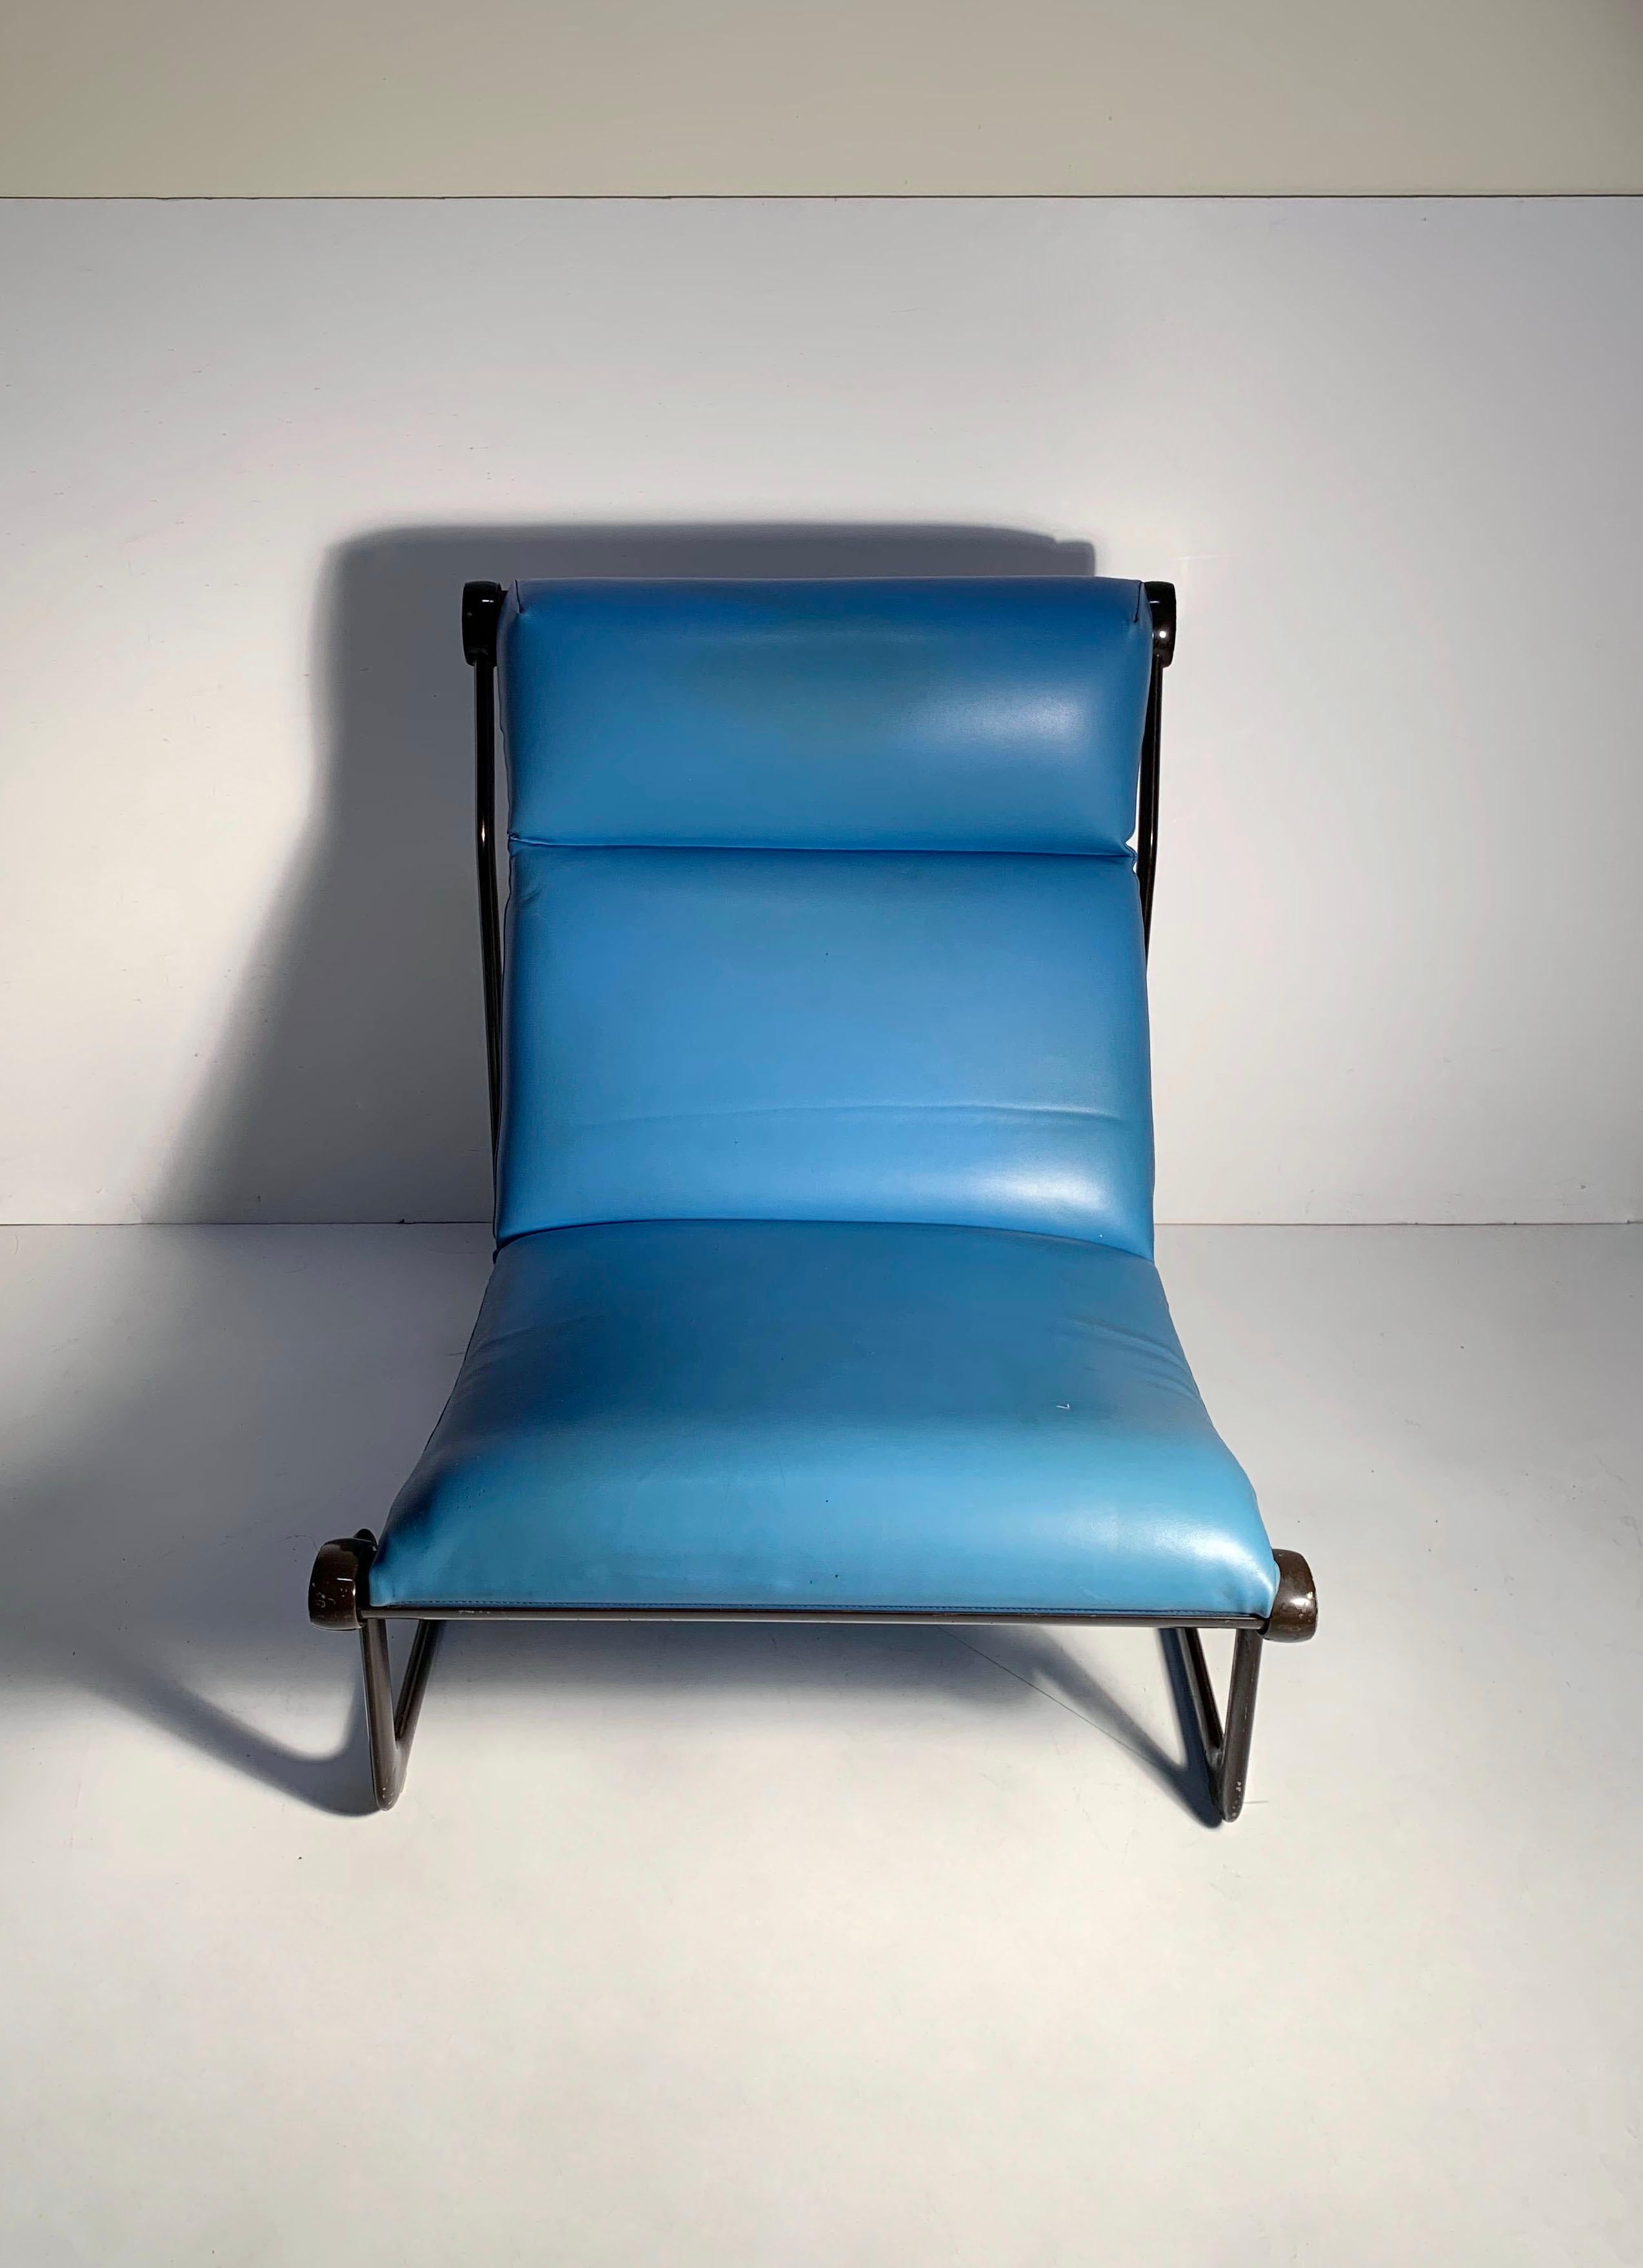 Vintage Lounge Chair von Bruce Hannah und Andrew Morrison für Knoll

Eine eher seltene Variante des Stuhls in einer hohen Rückenlehne. 

Sowohl der Rahmen als auch die Polsterung sind original und weisen einige Gebrauchsspuren auf. Wird